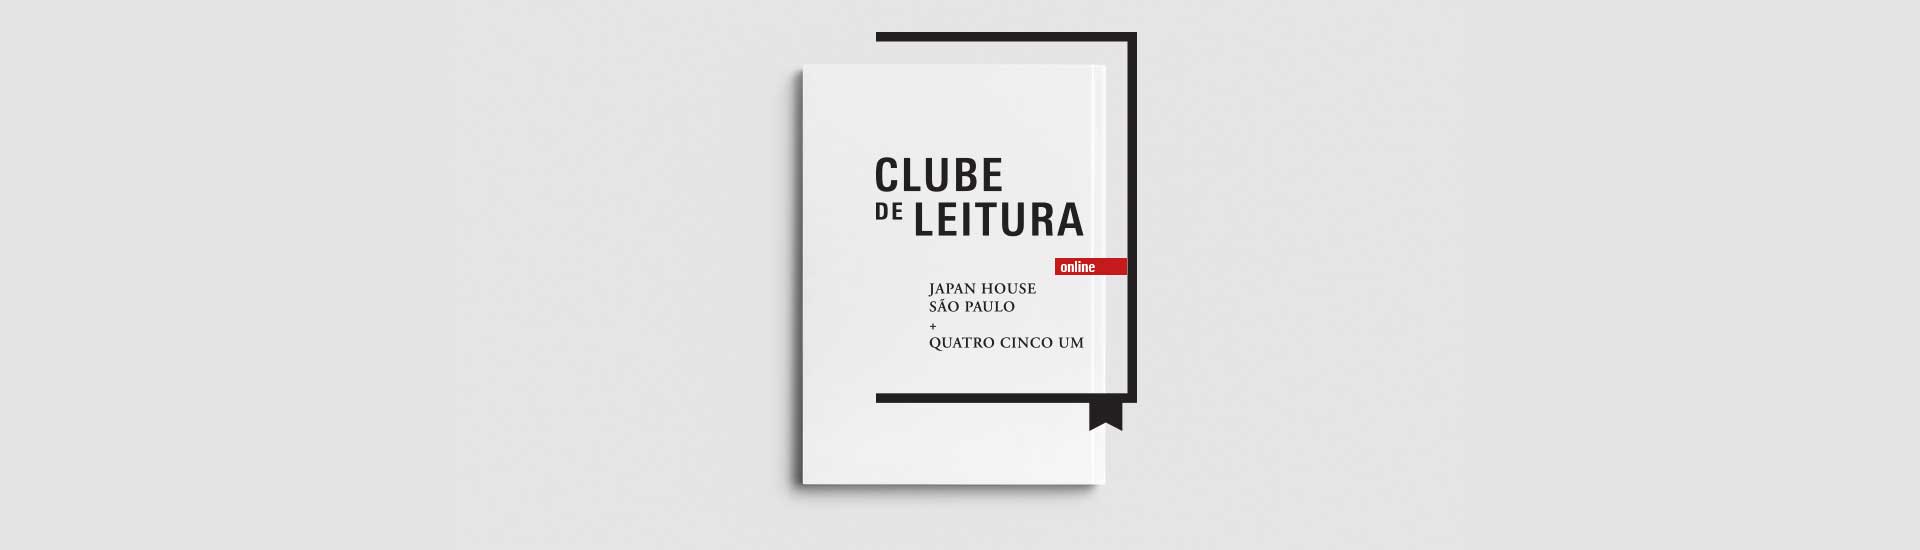 "Clube de Leitura Japan House São Paulo + Quatro Cinco Um - ONLINE". A imagem apresenta um papel branco na vertical, com o texto e moldura na cor preta. O fundo da imagem é branco.